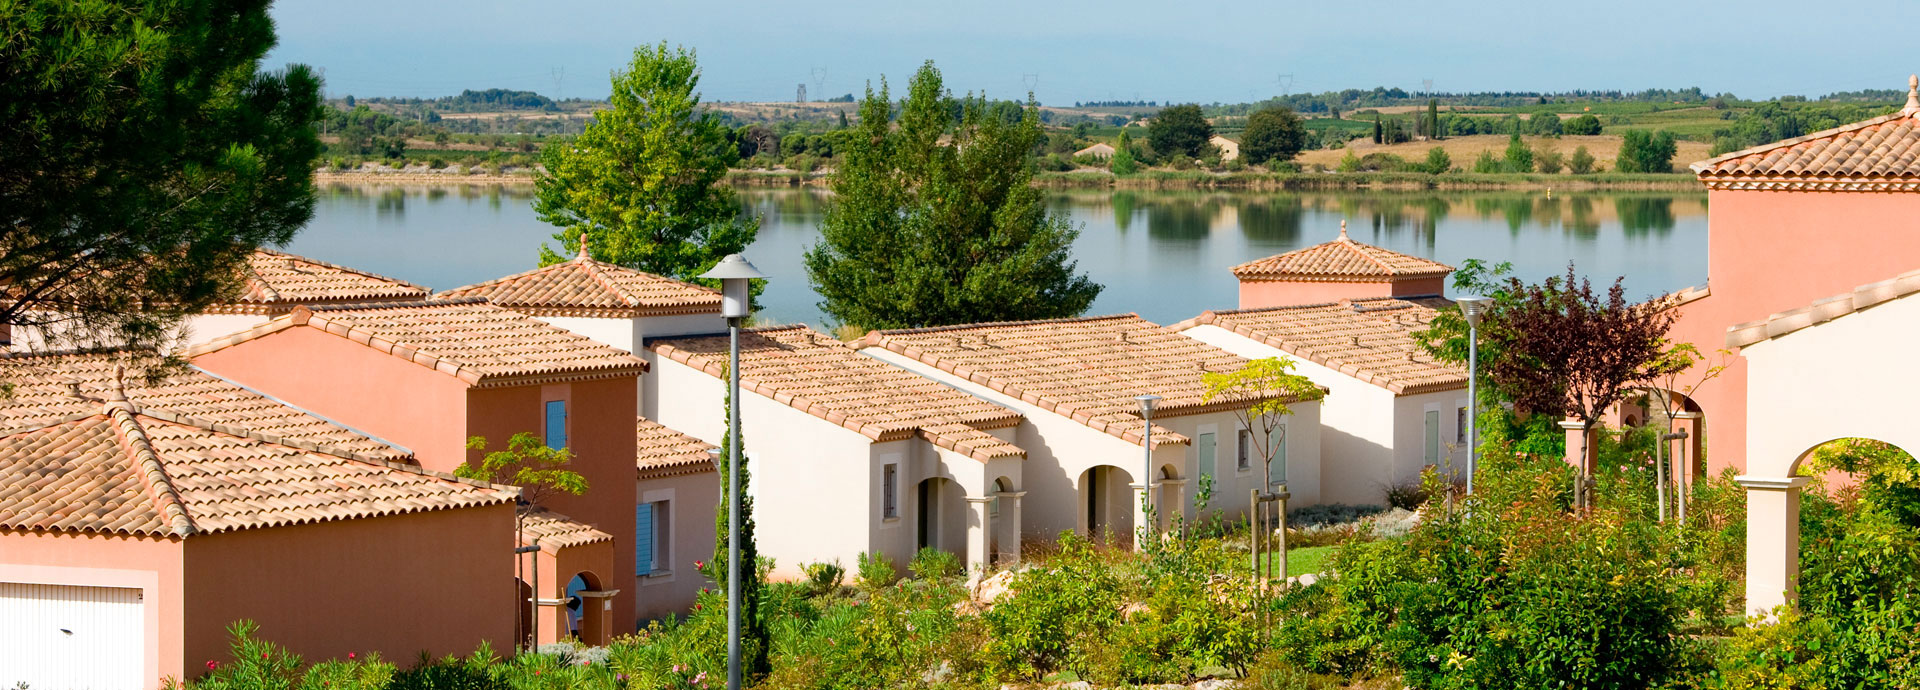 location vacances à Homps sur la Côte d’Azur : résidence Port Minervois